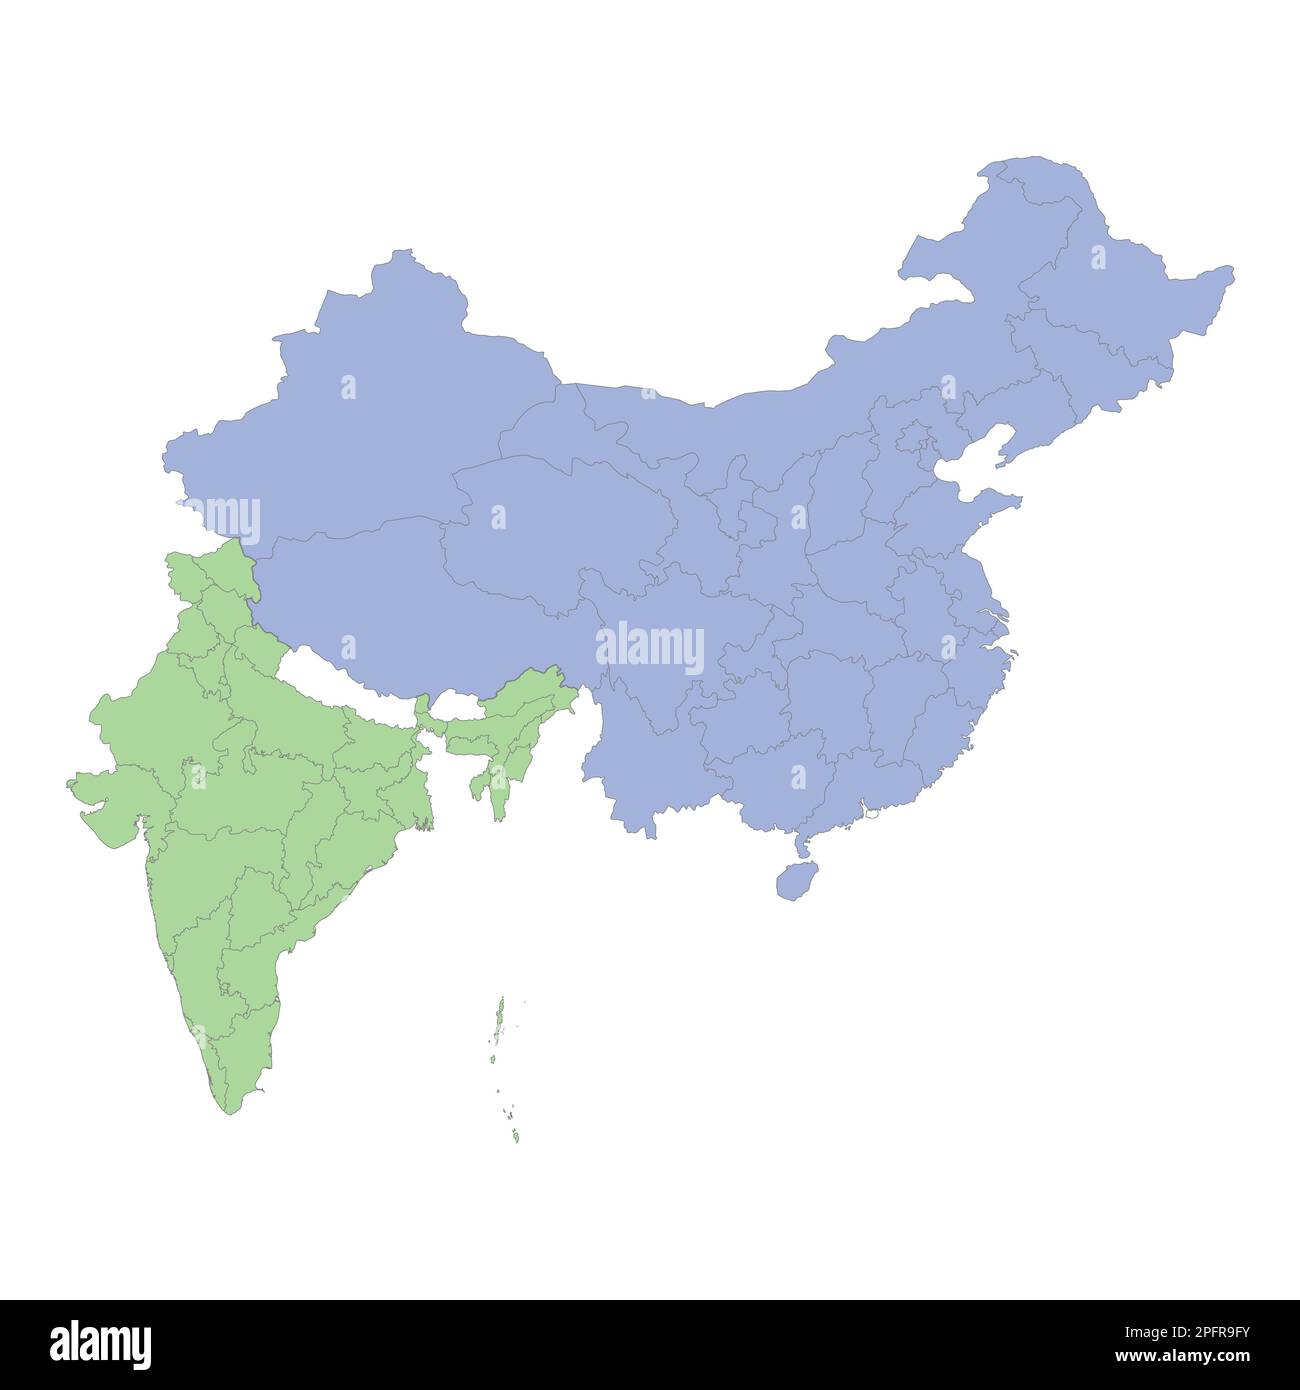 Mappa politica di alta qualità di Cina e India con i confini delle regioni o province. Illustrazione vettoriale Illustrazione Vettoriale